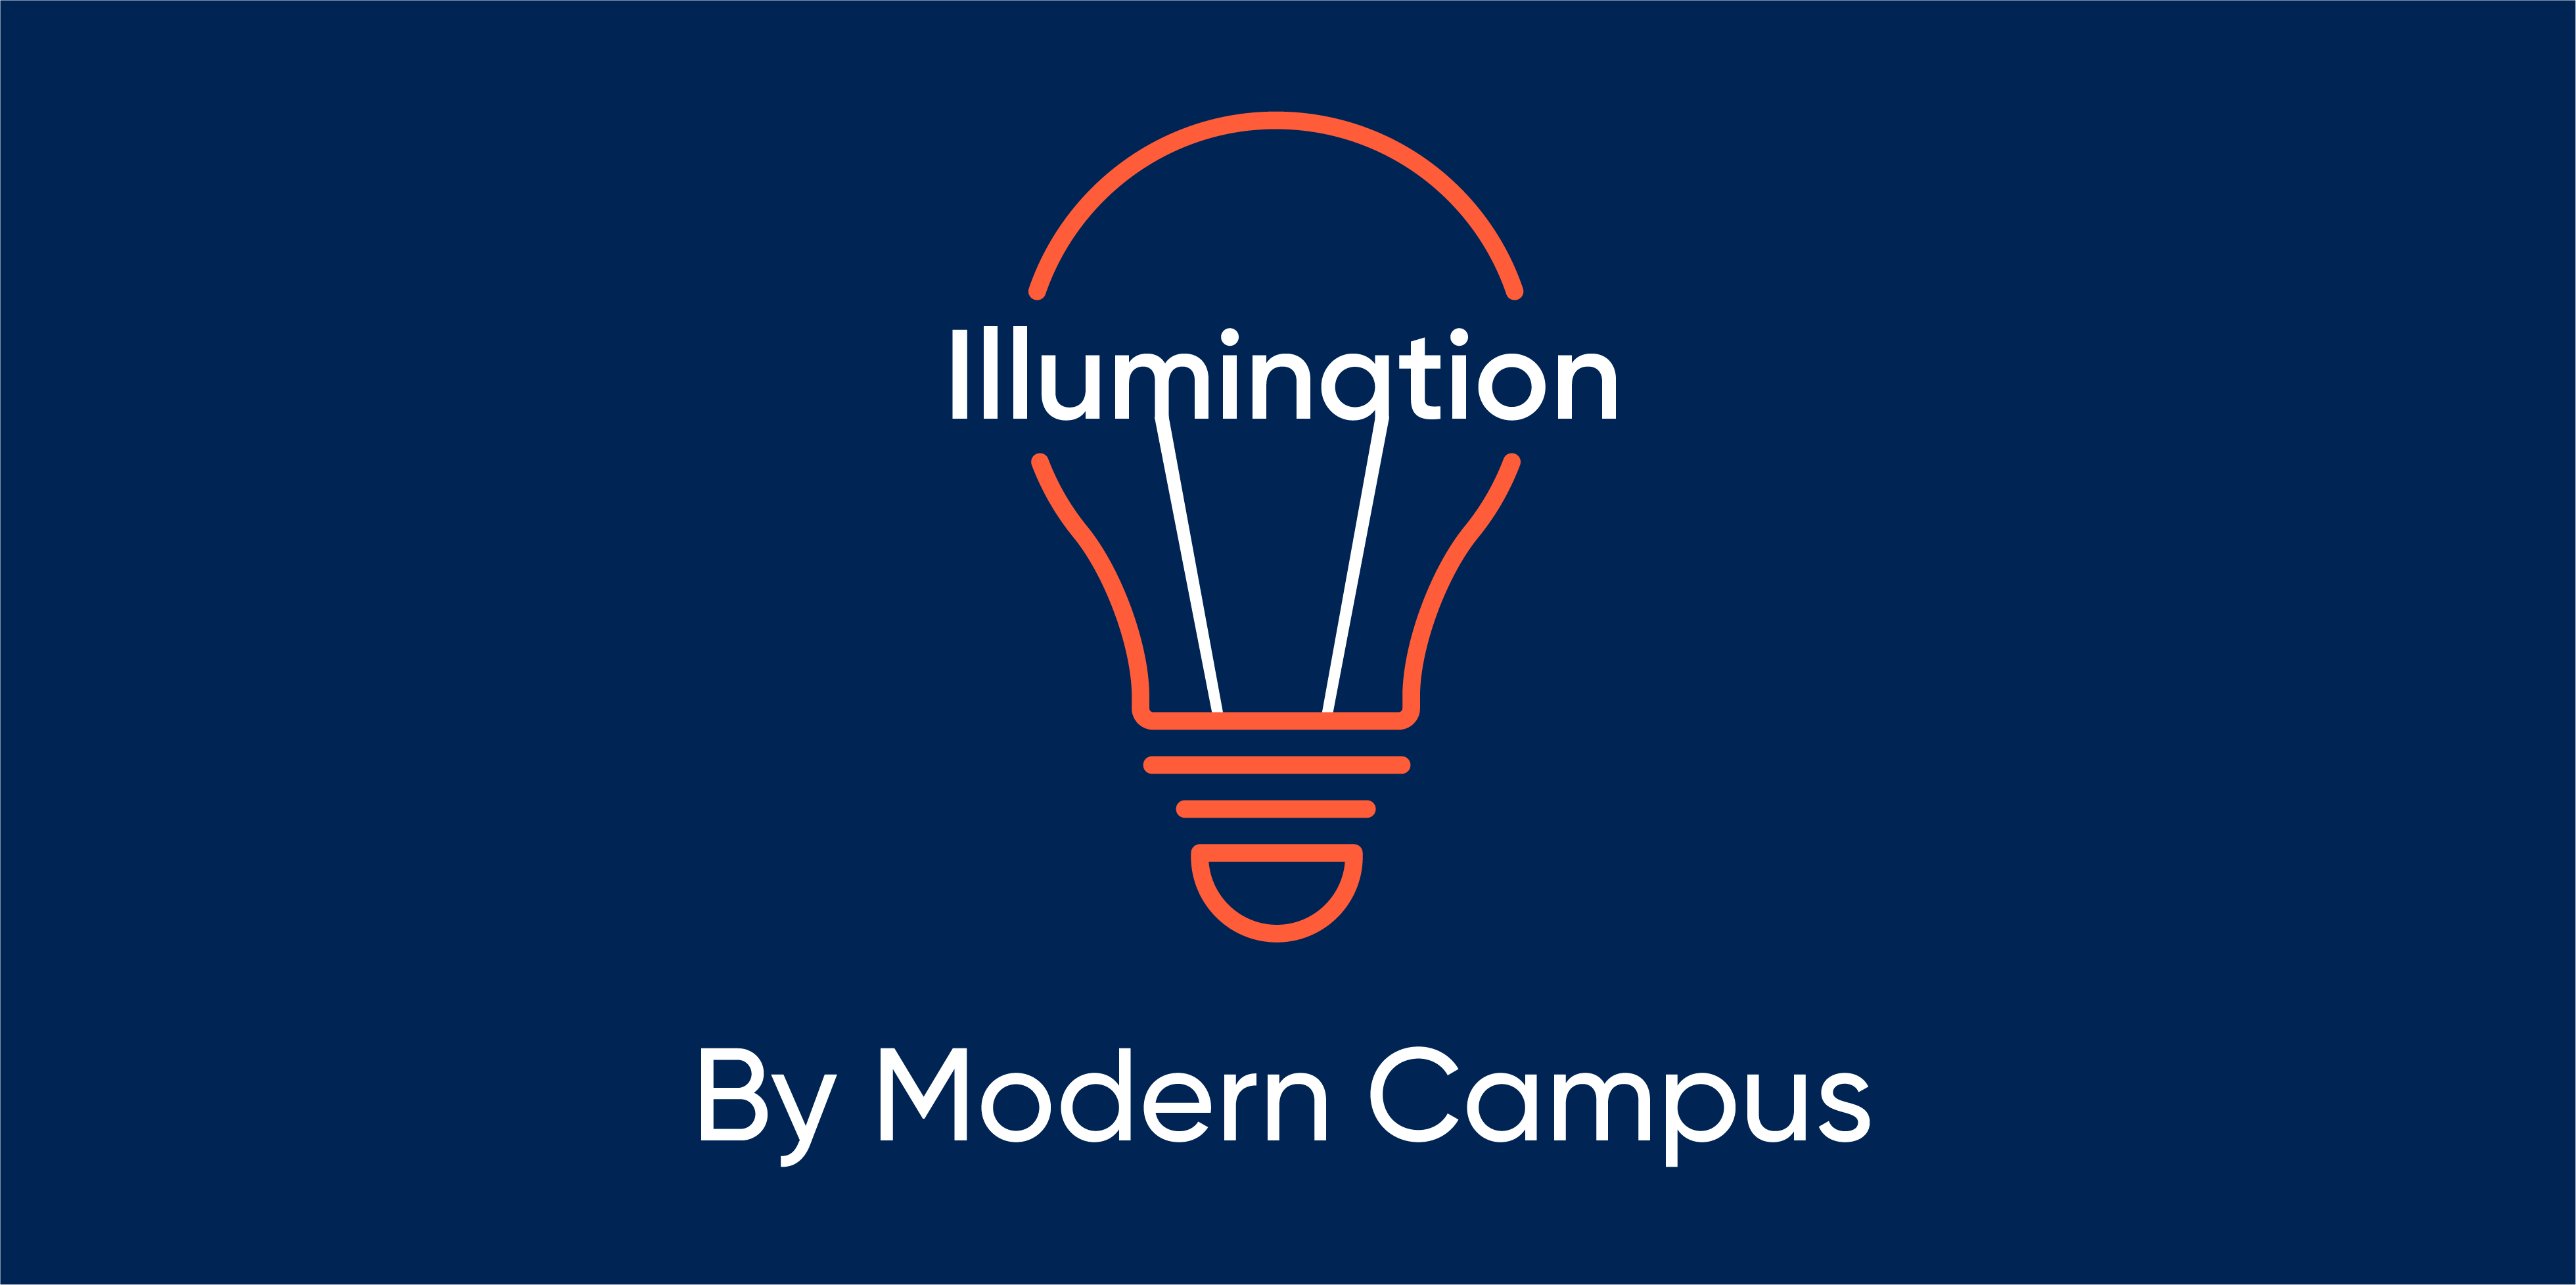 Episode 72: Illumination by Modern Campus